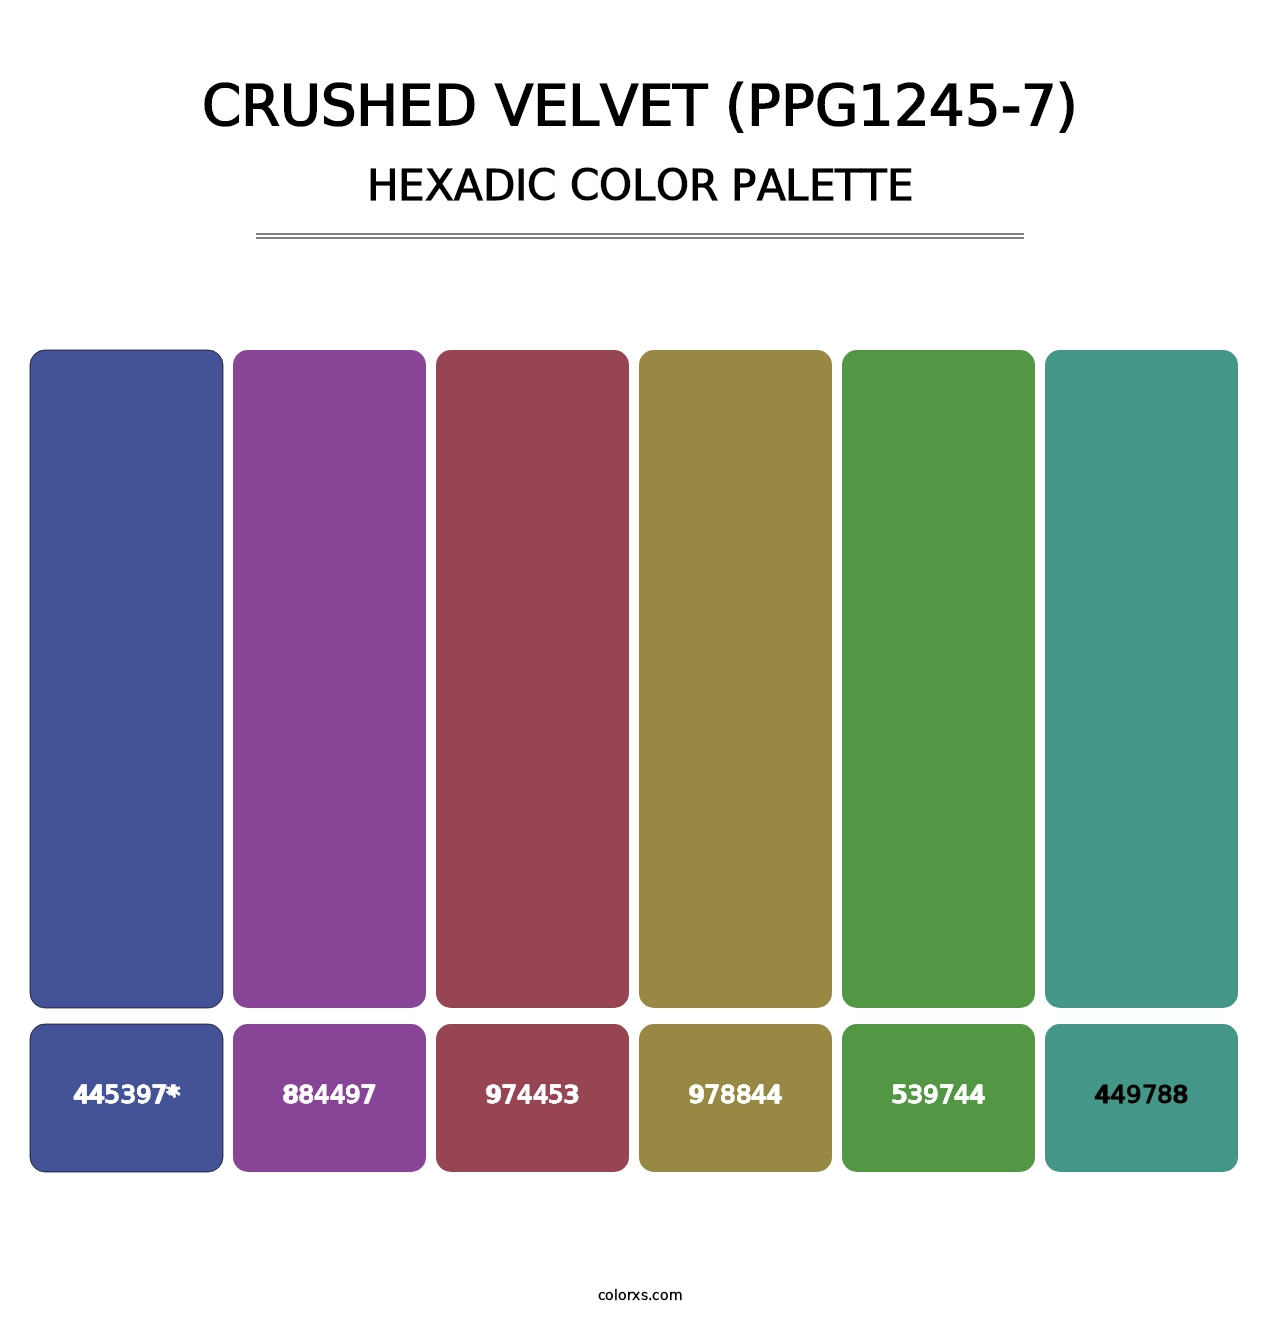 Crushed Velvet (PPG1245-7) - Hexadic Color Palette